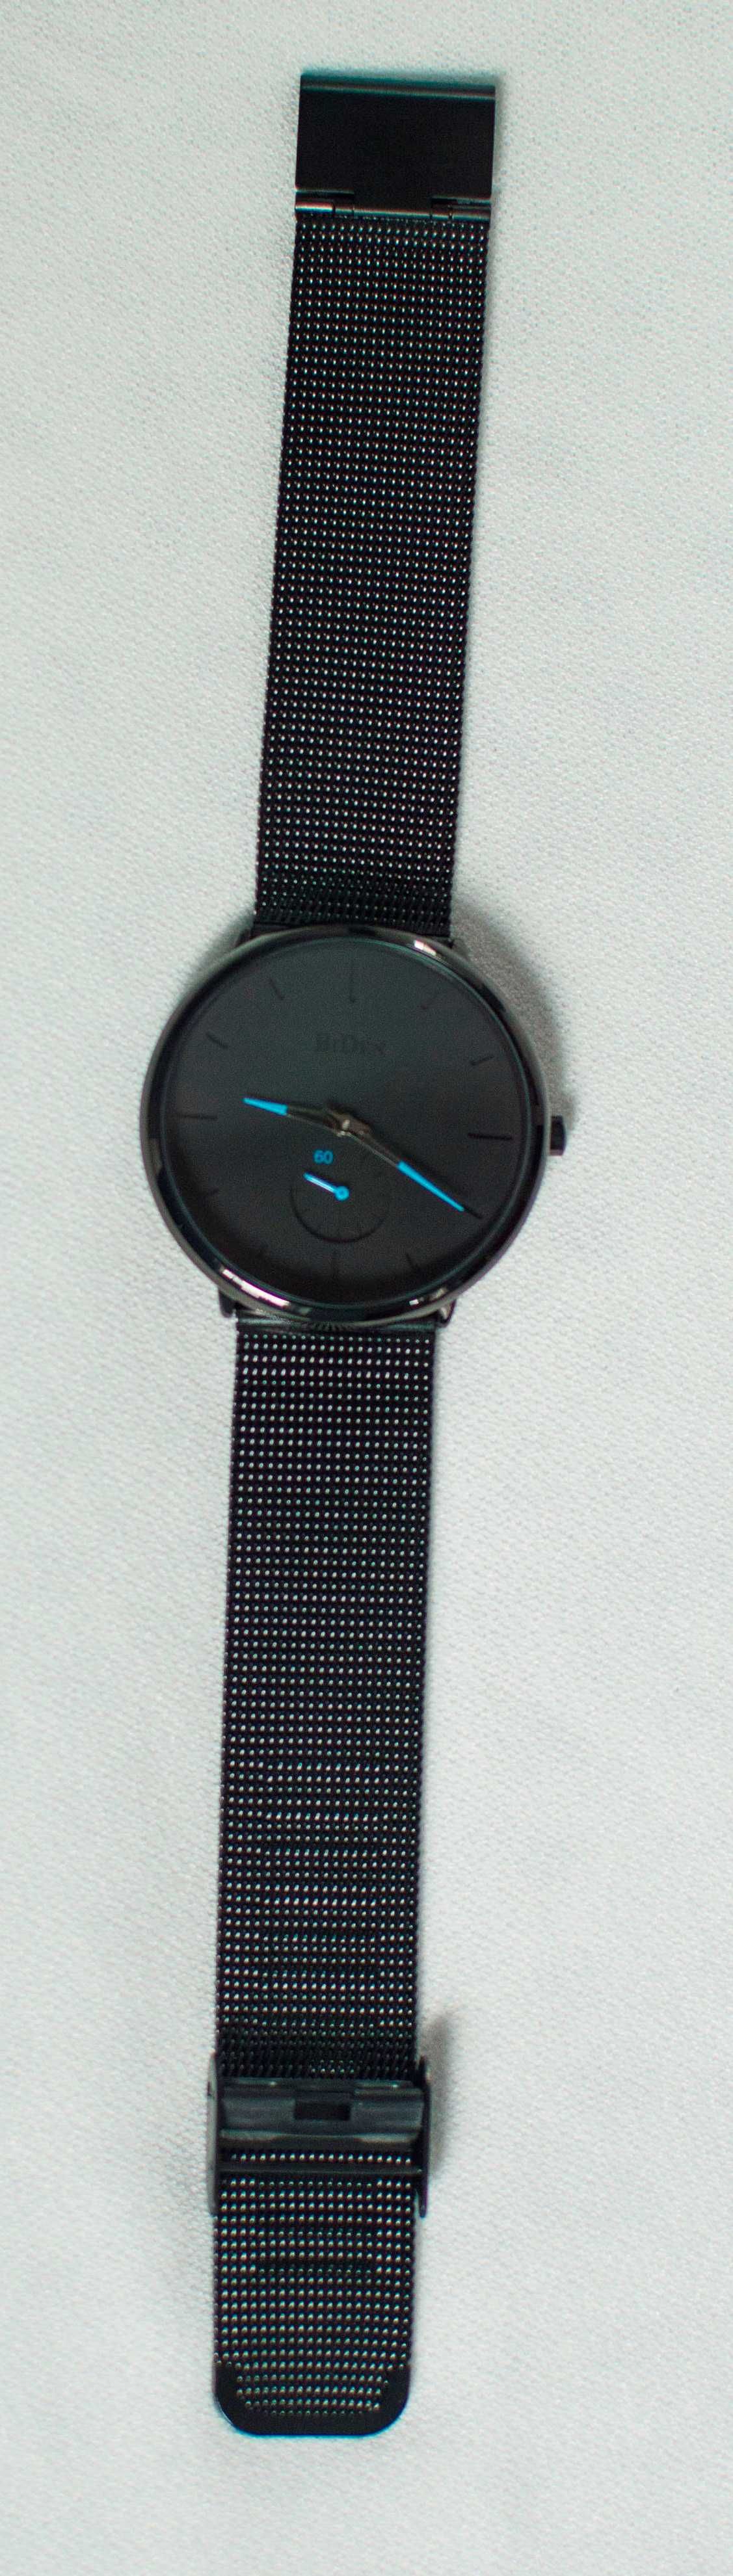 Męski stylowy zegarek